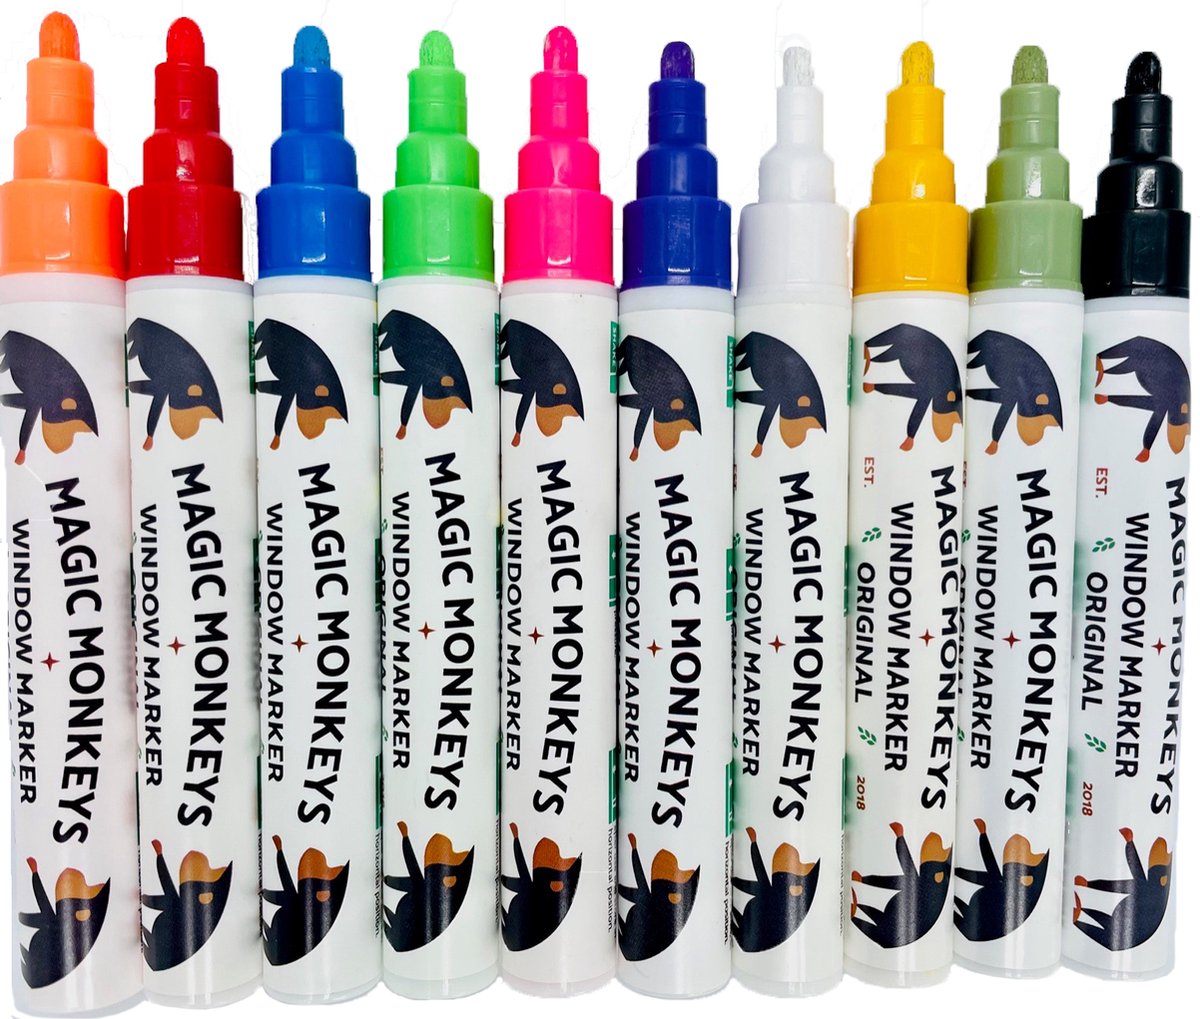 Raamstiften - Krijtstiften - krijtmarkers - glasstiften - raamtekenstiften - window markers - set van 10 Stiften - Magic Monkeys